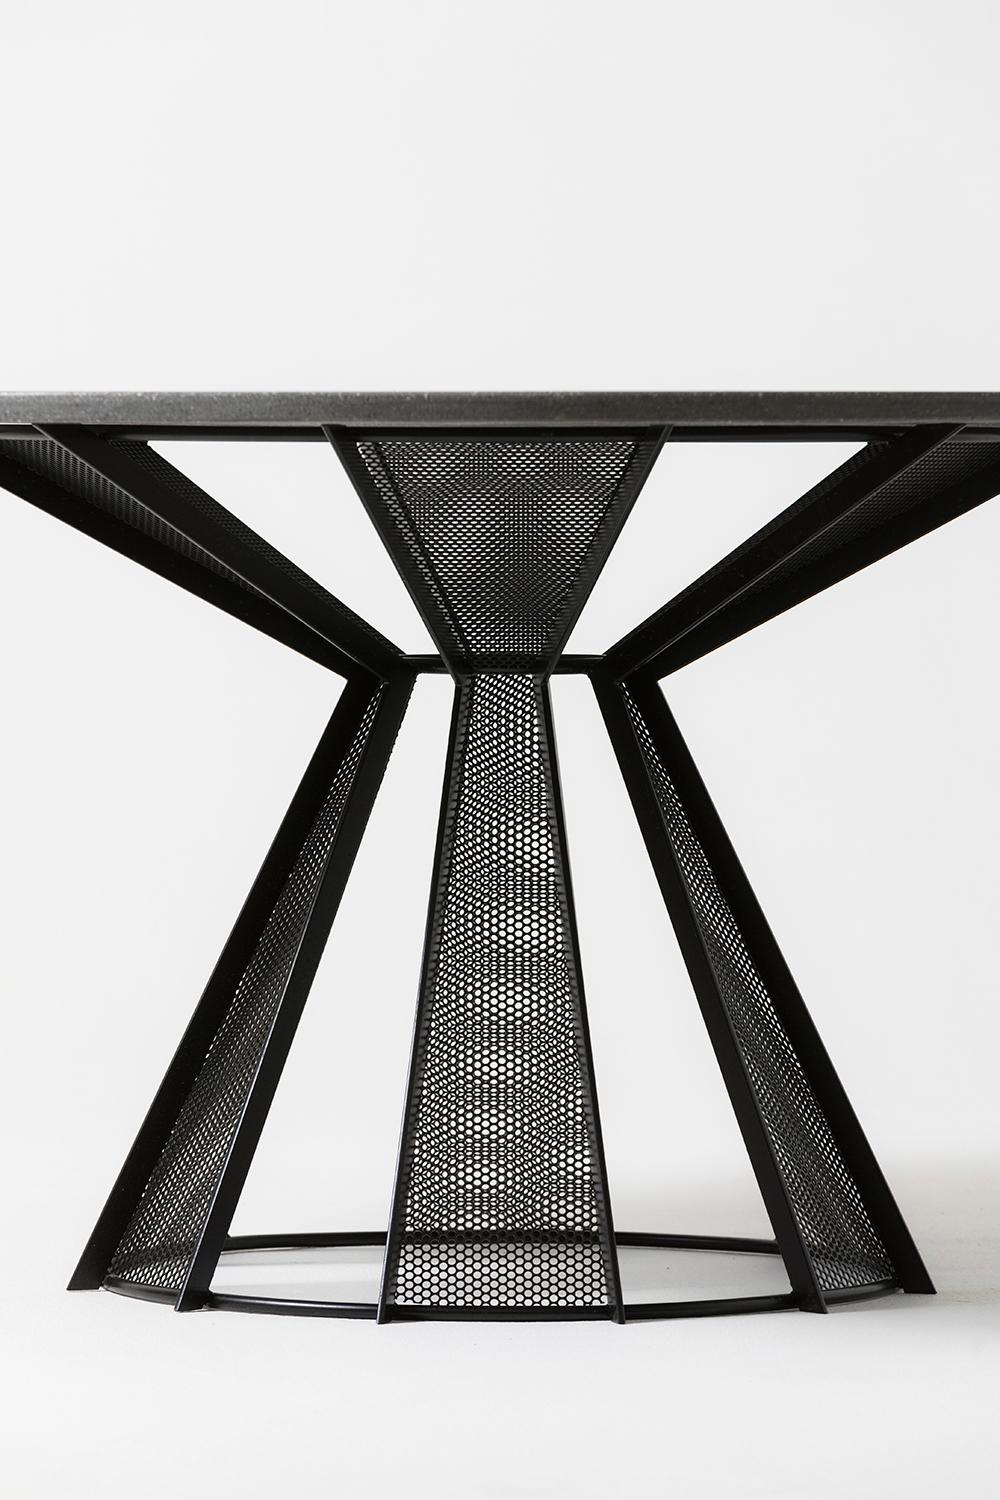 Ein schlichtes und klassisches Design, das französischen Landhausstil mit raffiniertem Industrial verbindet. Tischplatte aus Beton mit pulverbeschichtetem Stahlgestell. Für den Innen- und Außenbereich geeignet.

Dieses Stück ist jetzt im